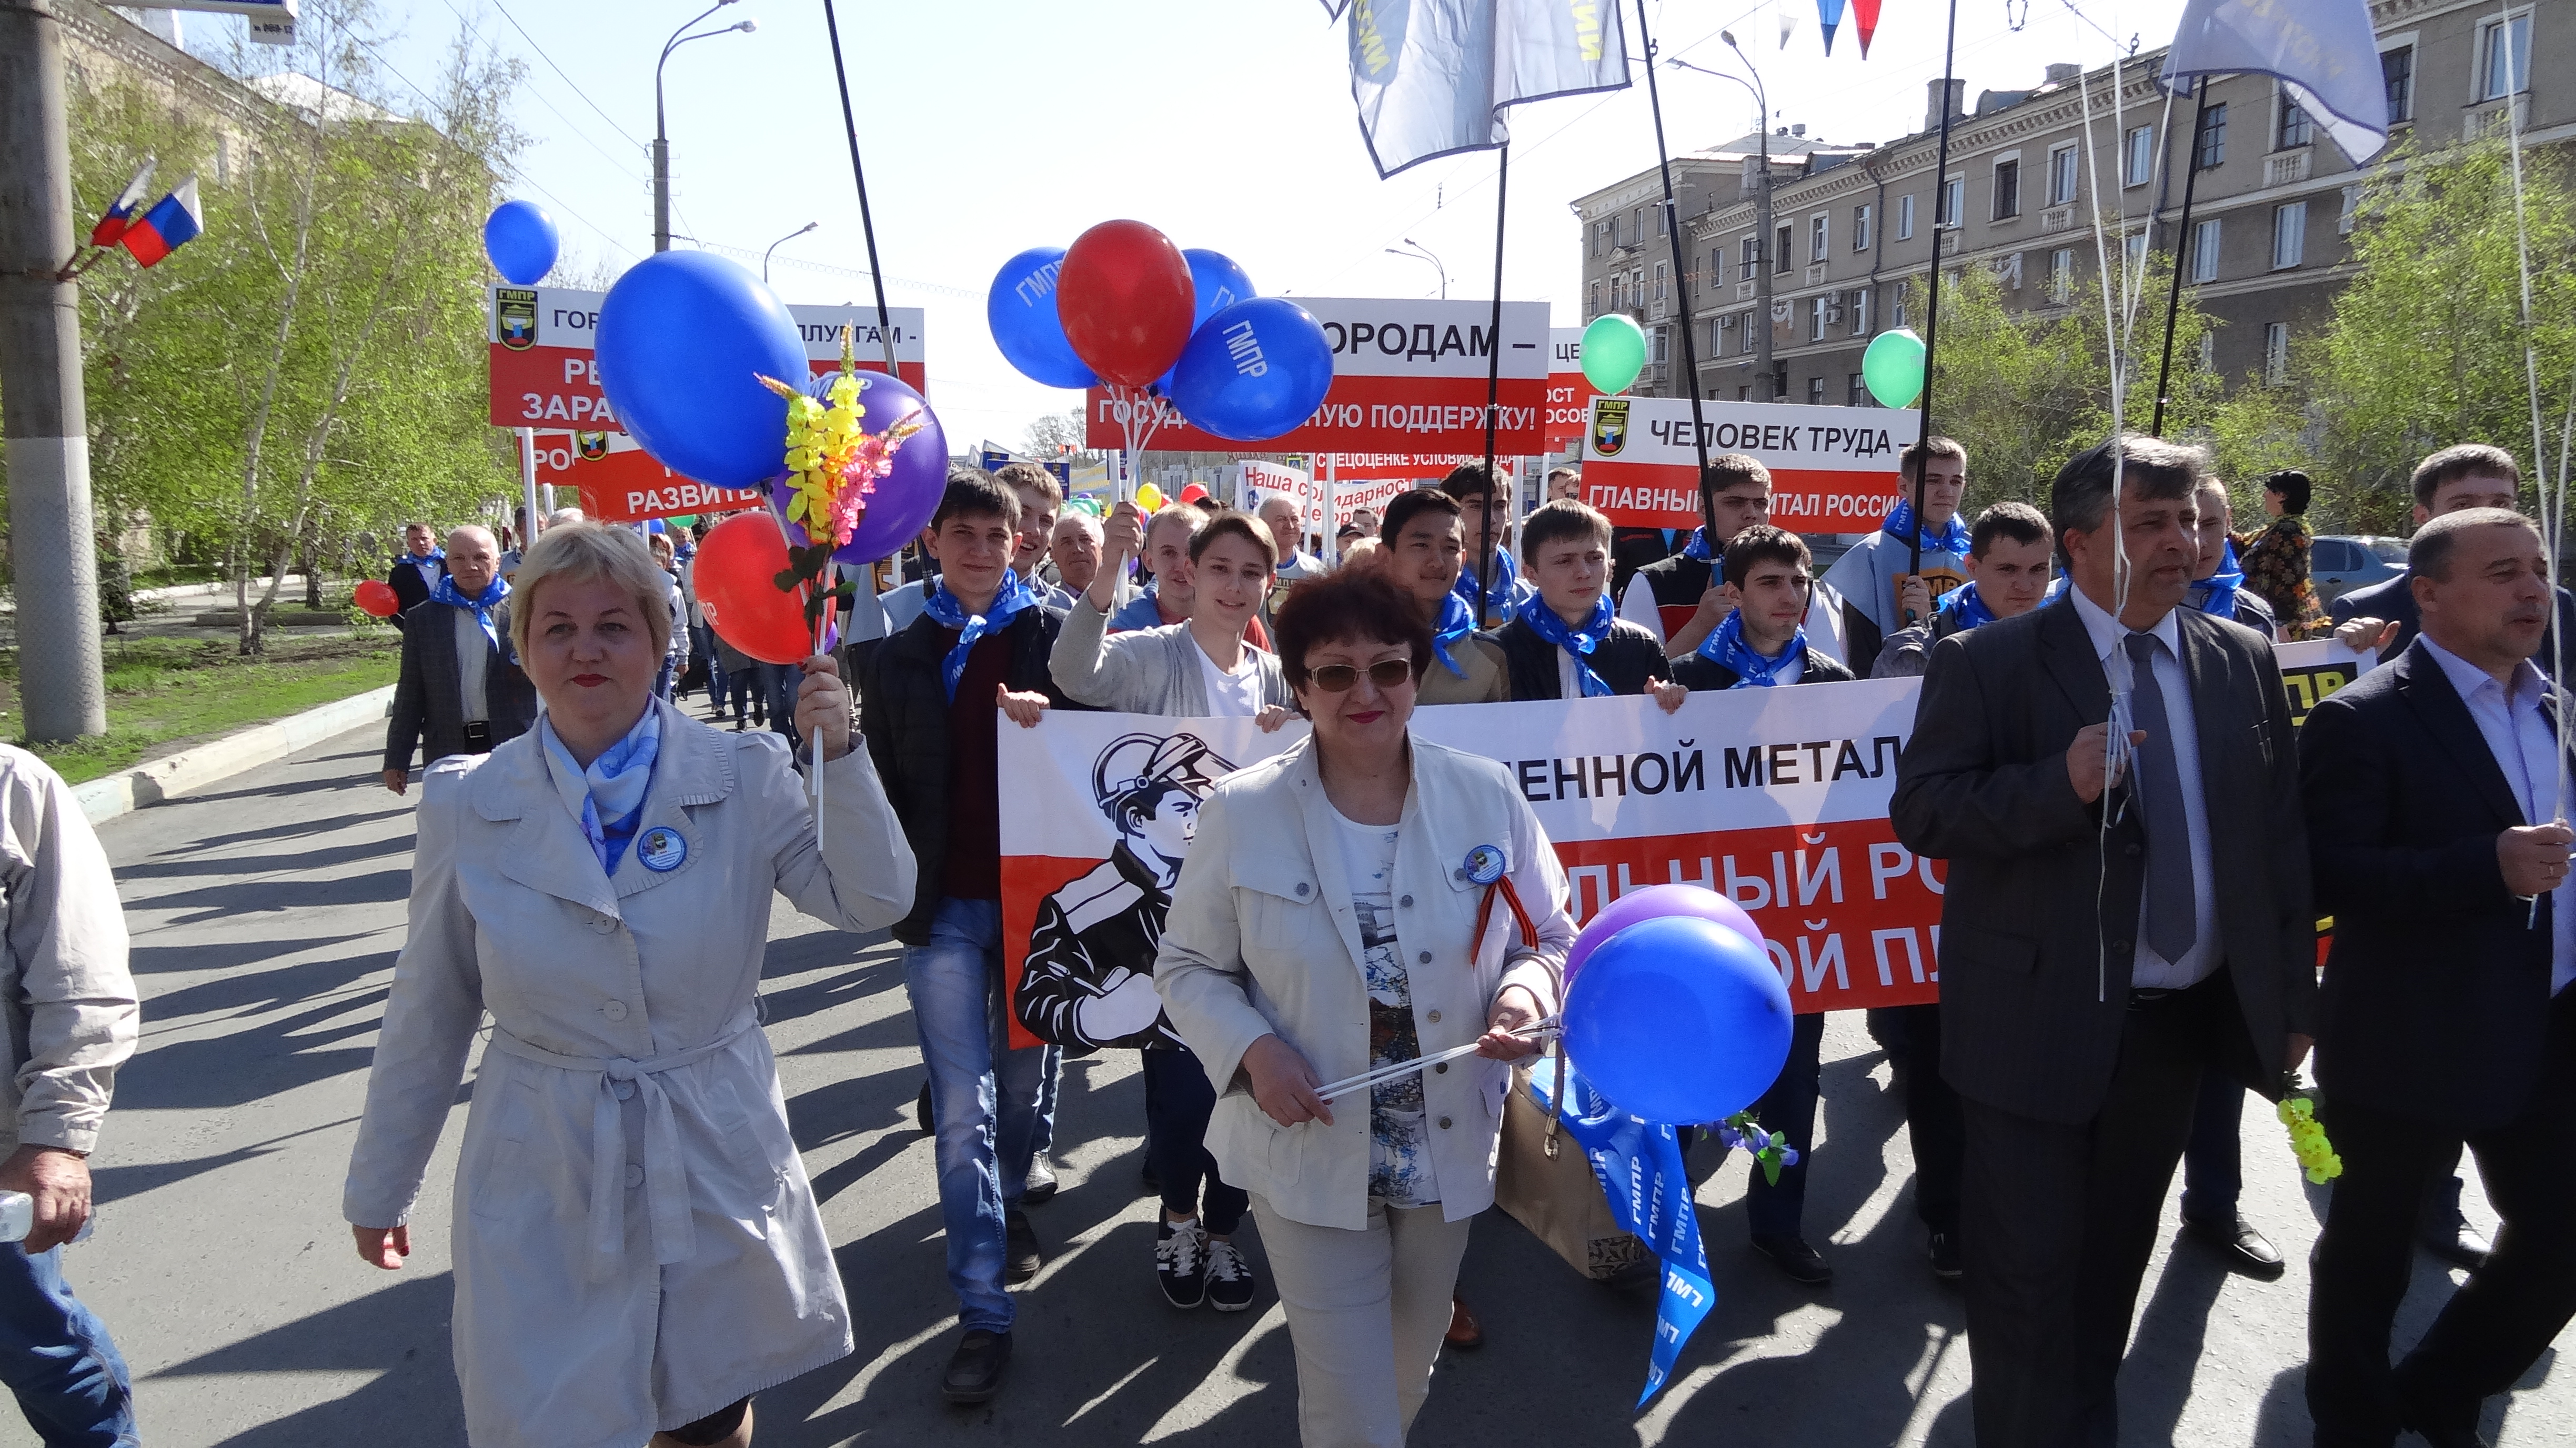 1 Мая в Орске профсоюзы планируют провести демонстрацию